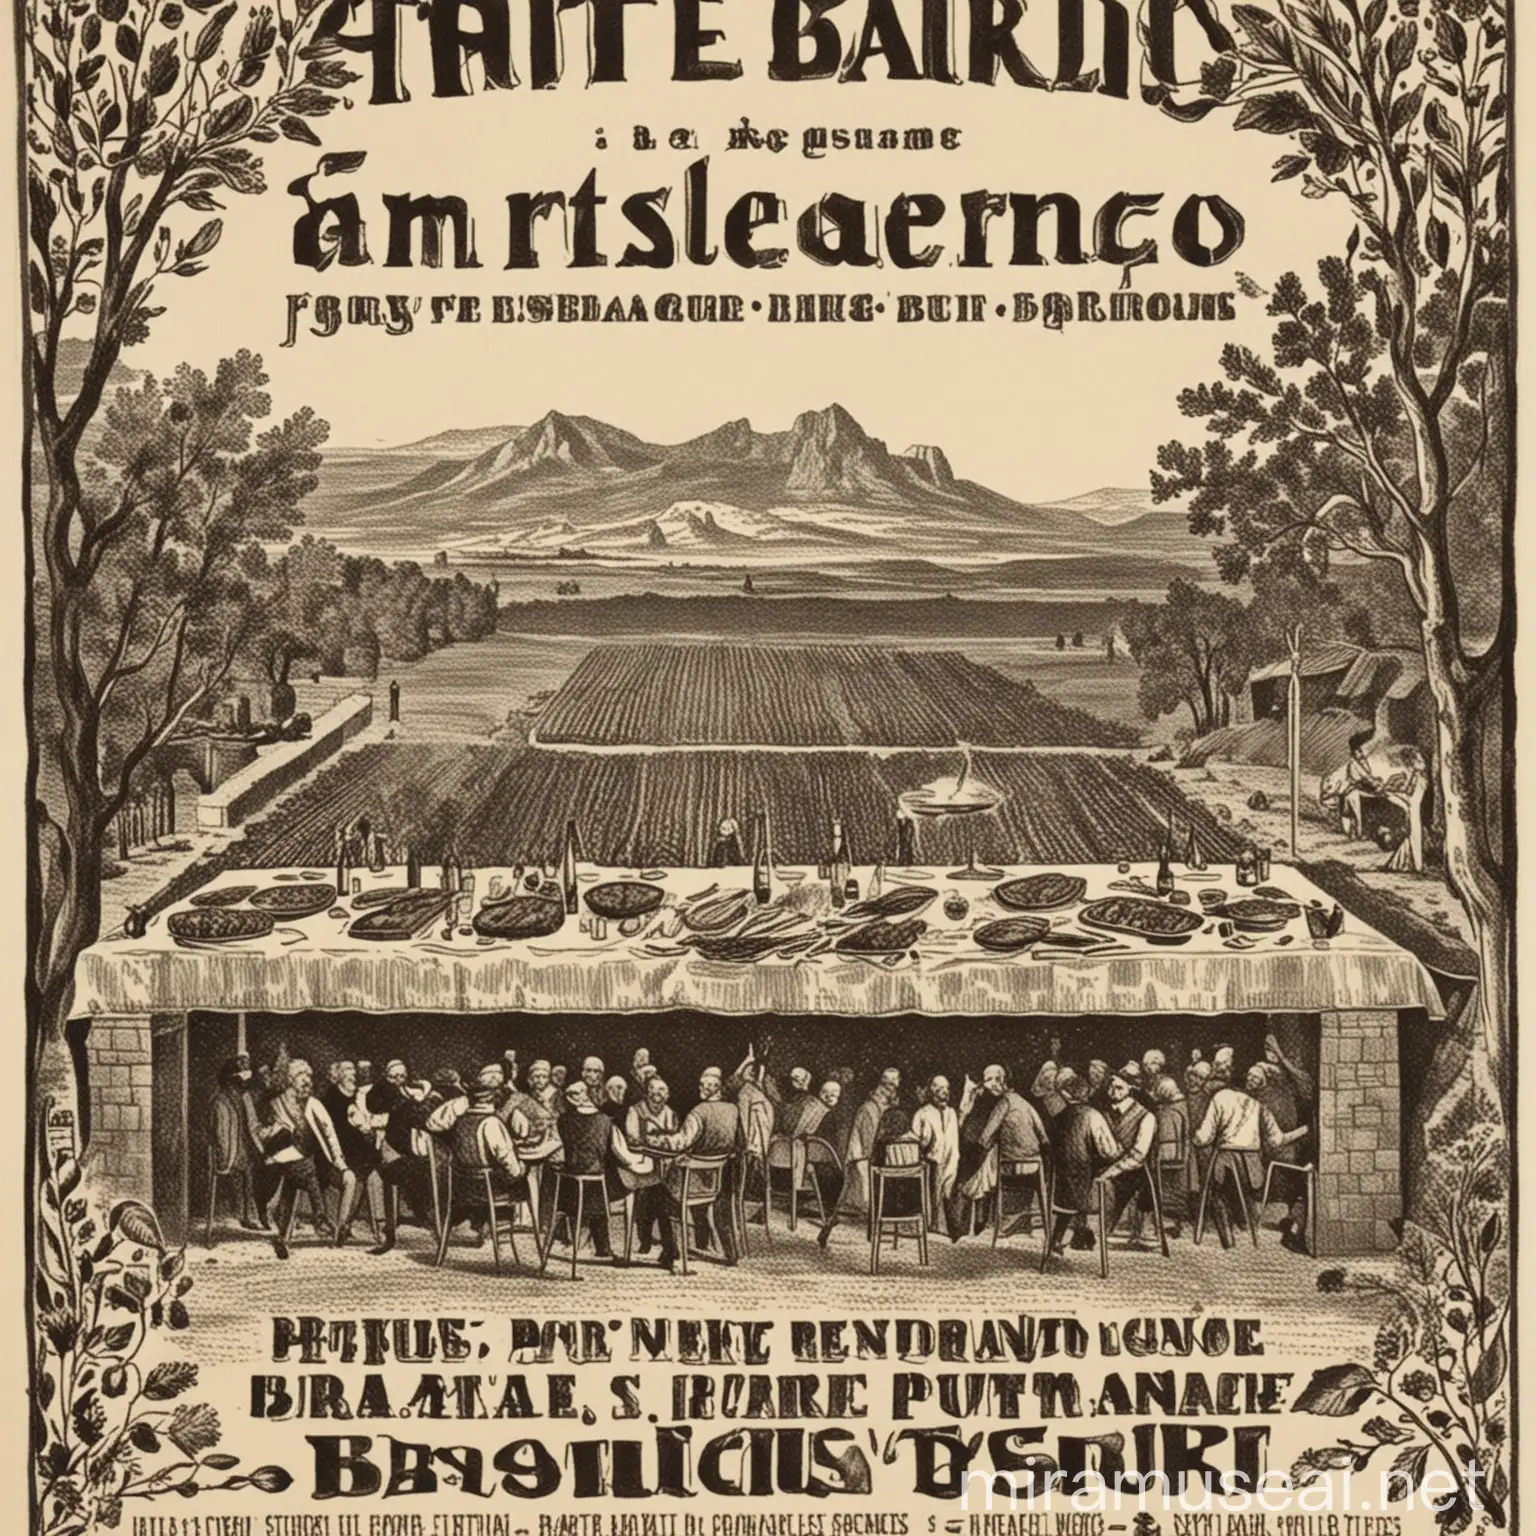 affiche d'annonce d'un banquet organisé par "centrale terroir" avec un barbecue
